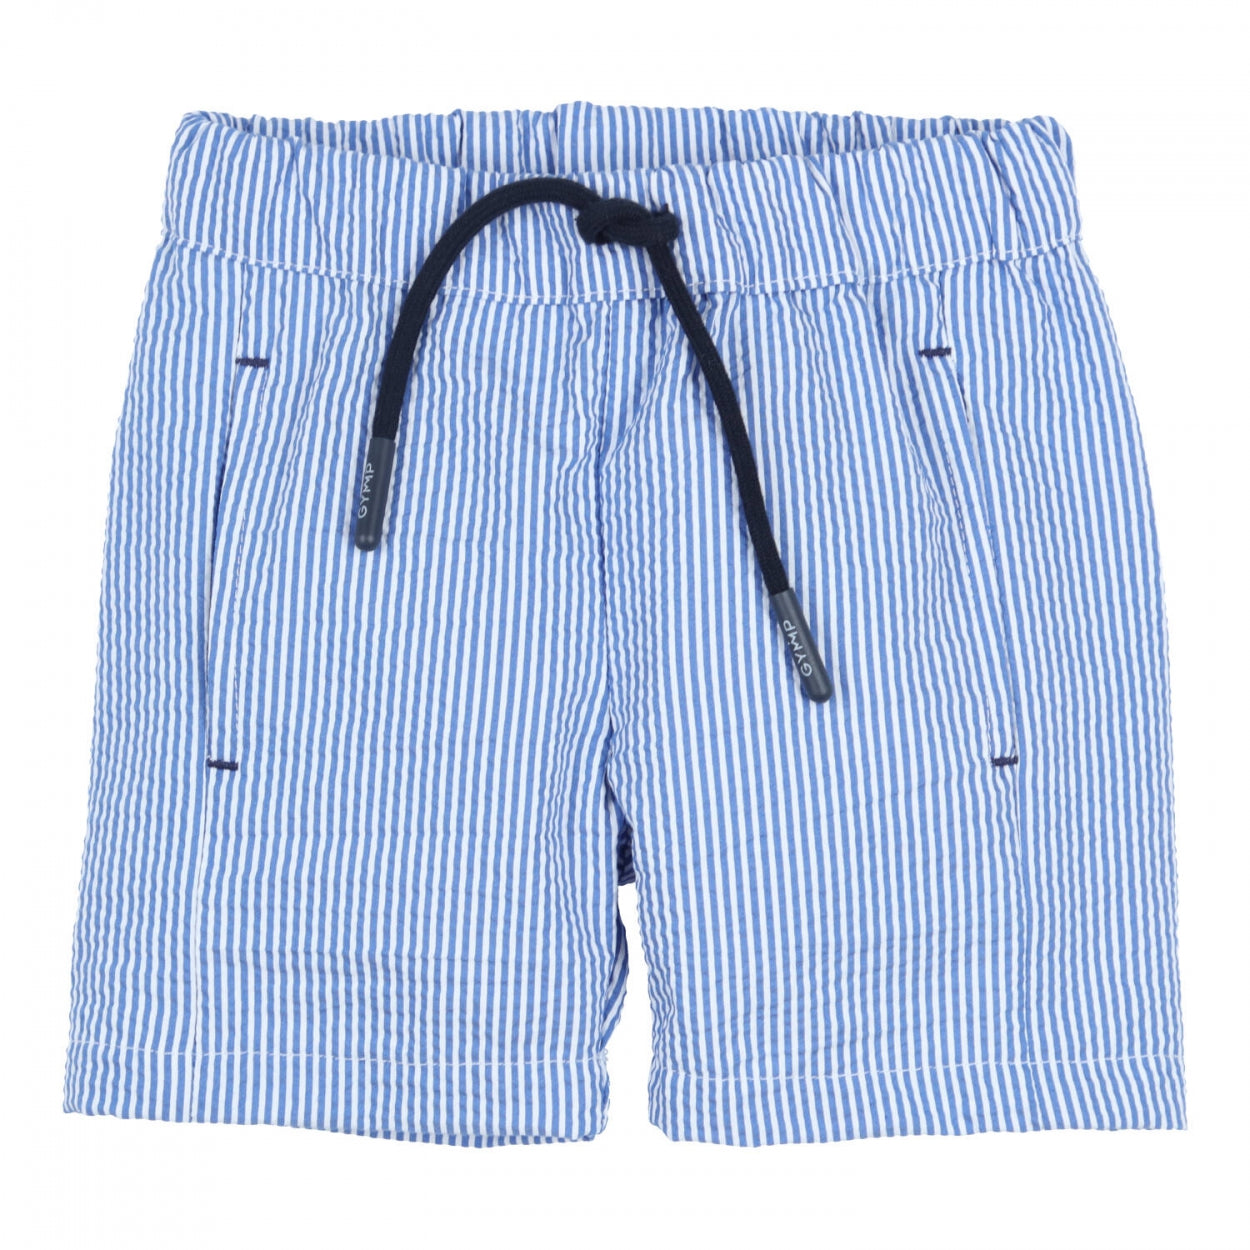 Jongens Shorts Caprio van Gymp in de kleur Blue - White in maat 86.